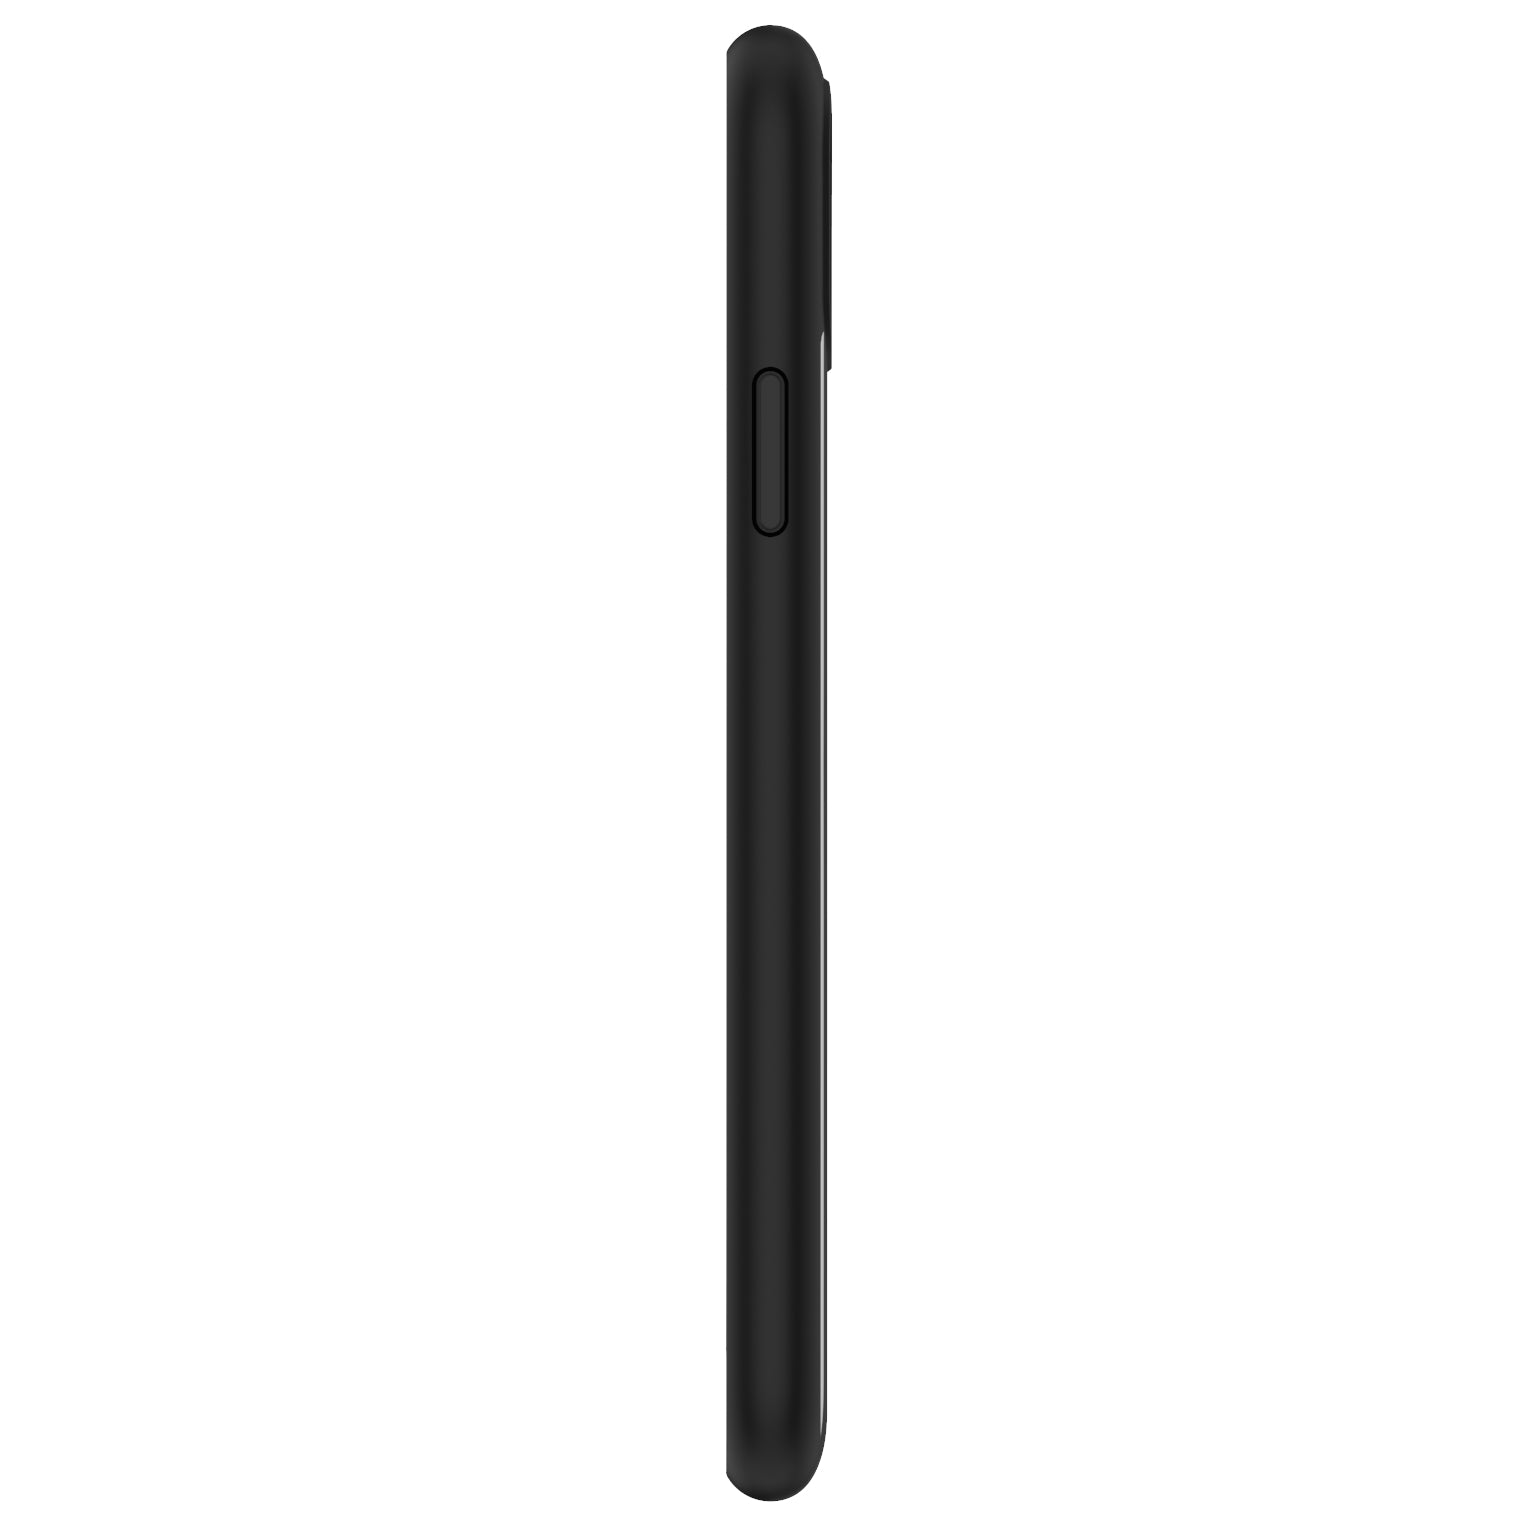 Aero iPhone 11 Pro Max - Black